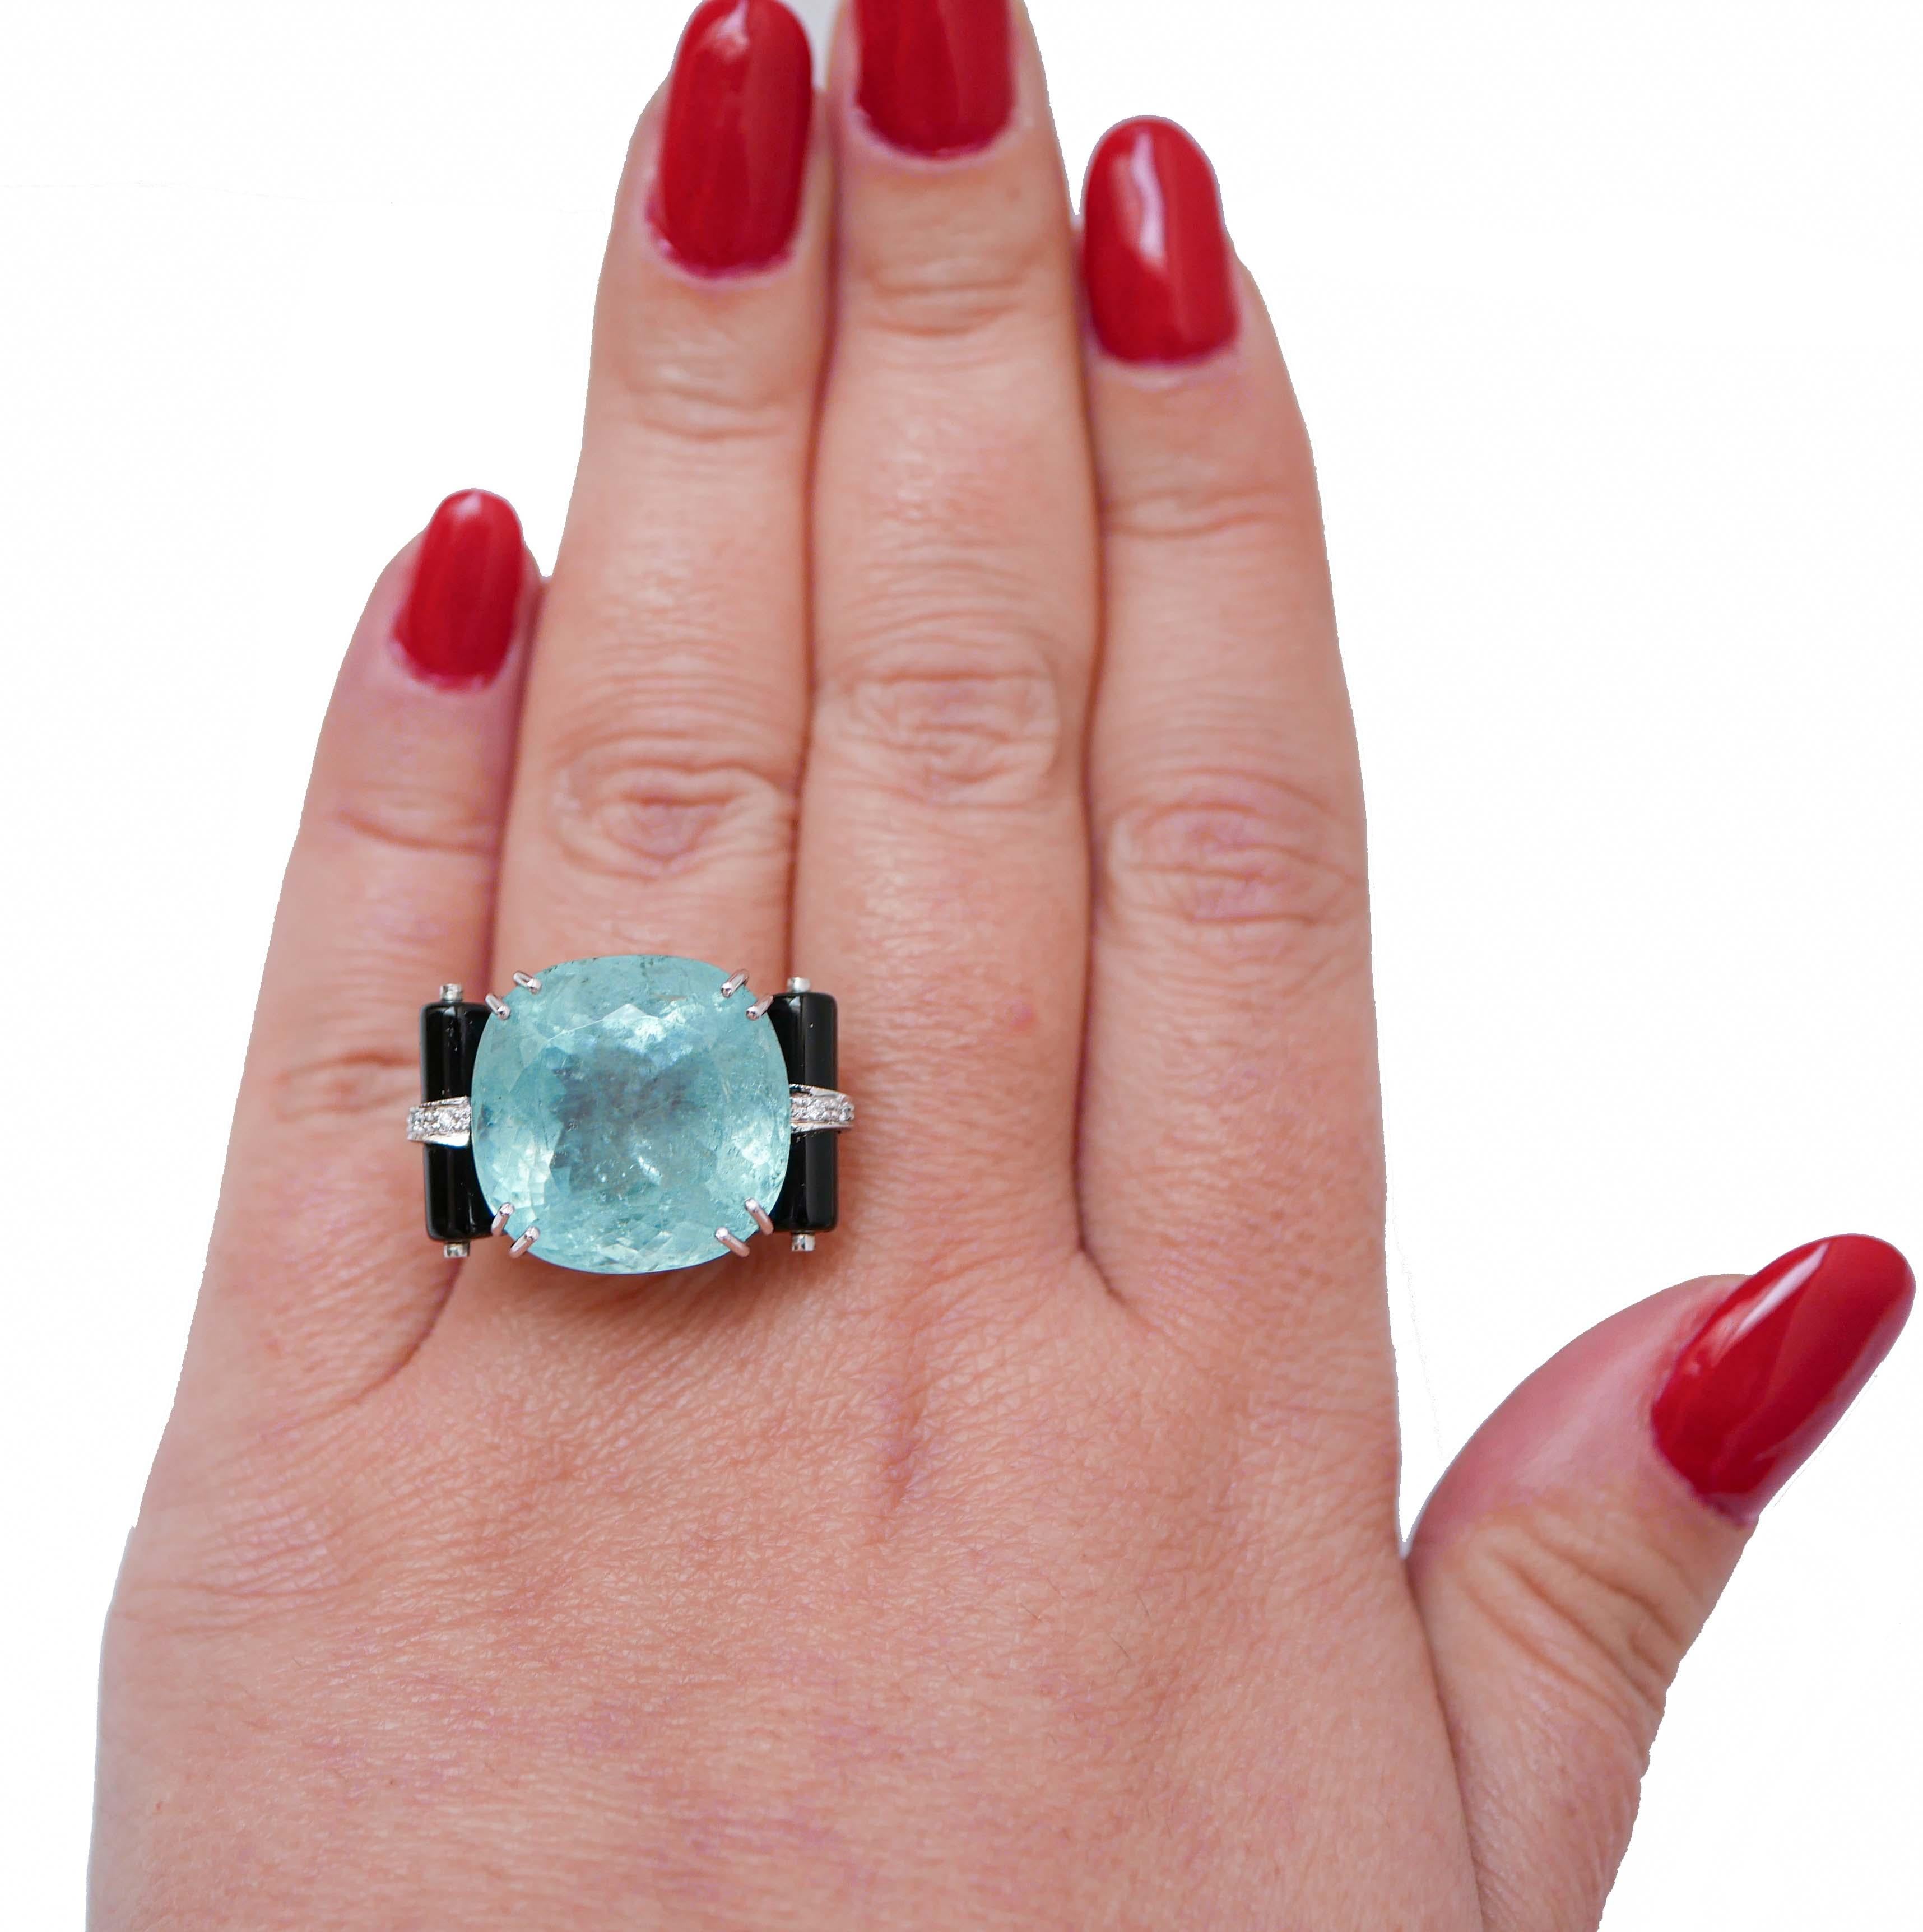 Mixed Cut Aquamarine, Diamonds, Onyx, Platinum Ring. For Sale